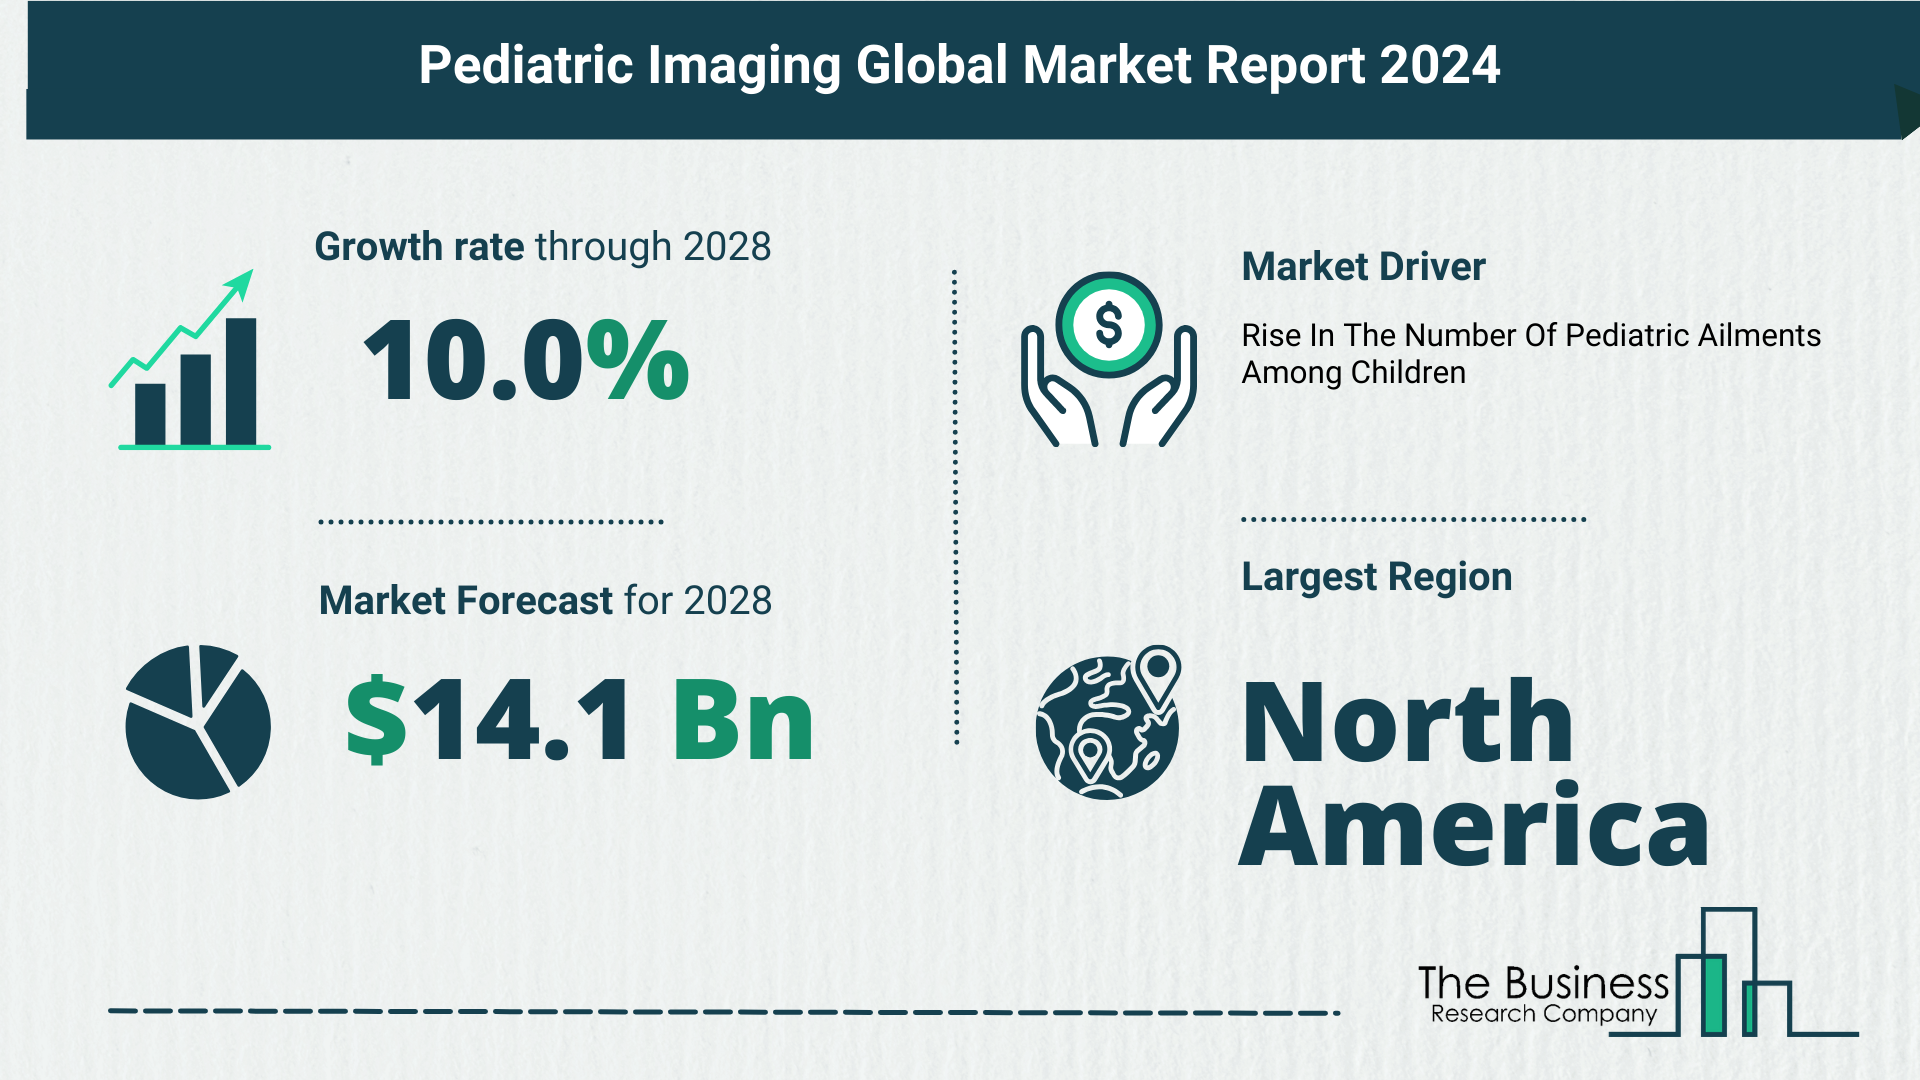 Global Pediatric Imaging Market